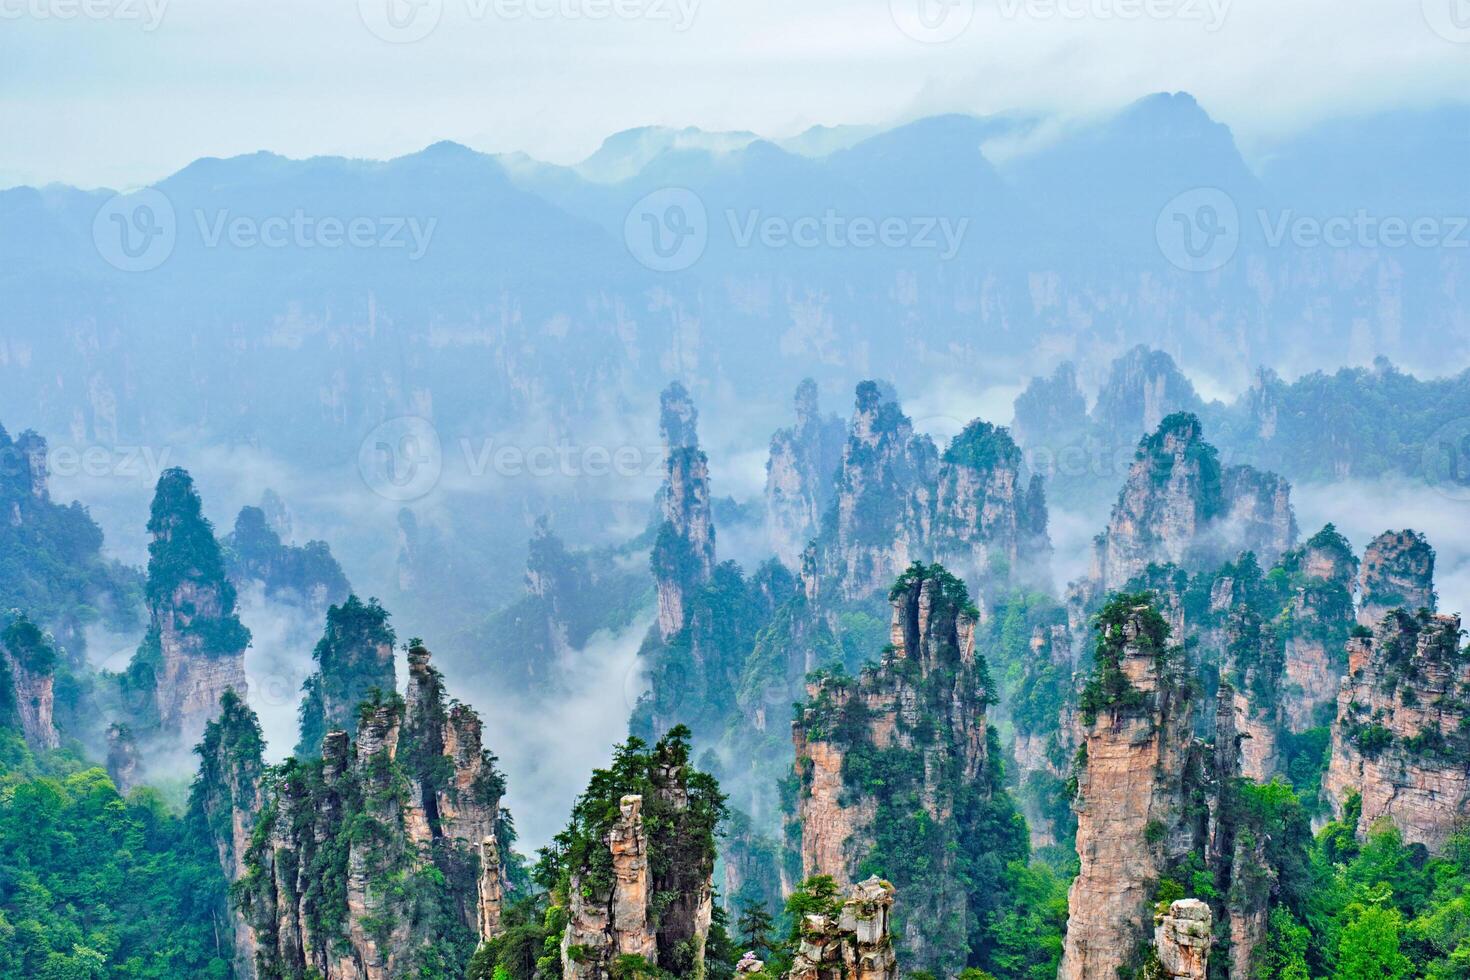 zhangjiajie bergen, China foto